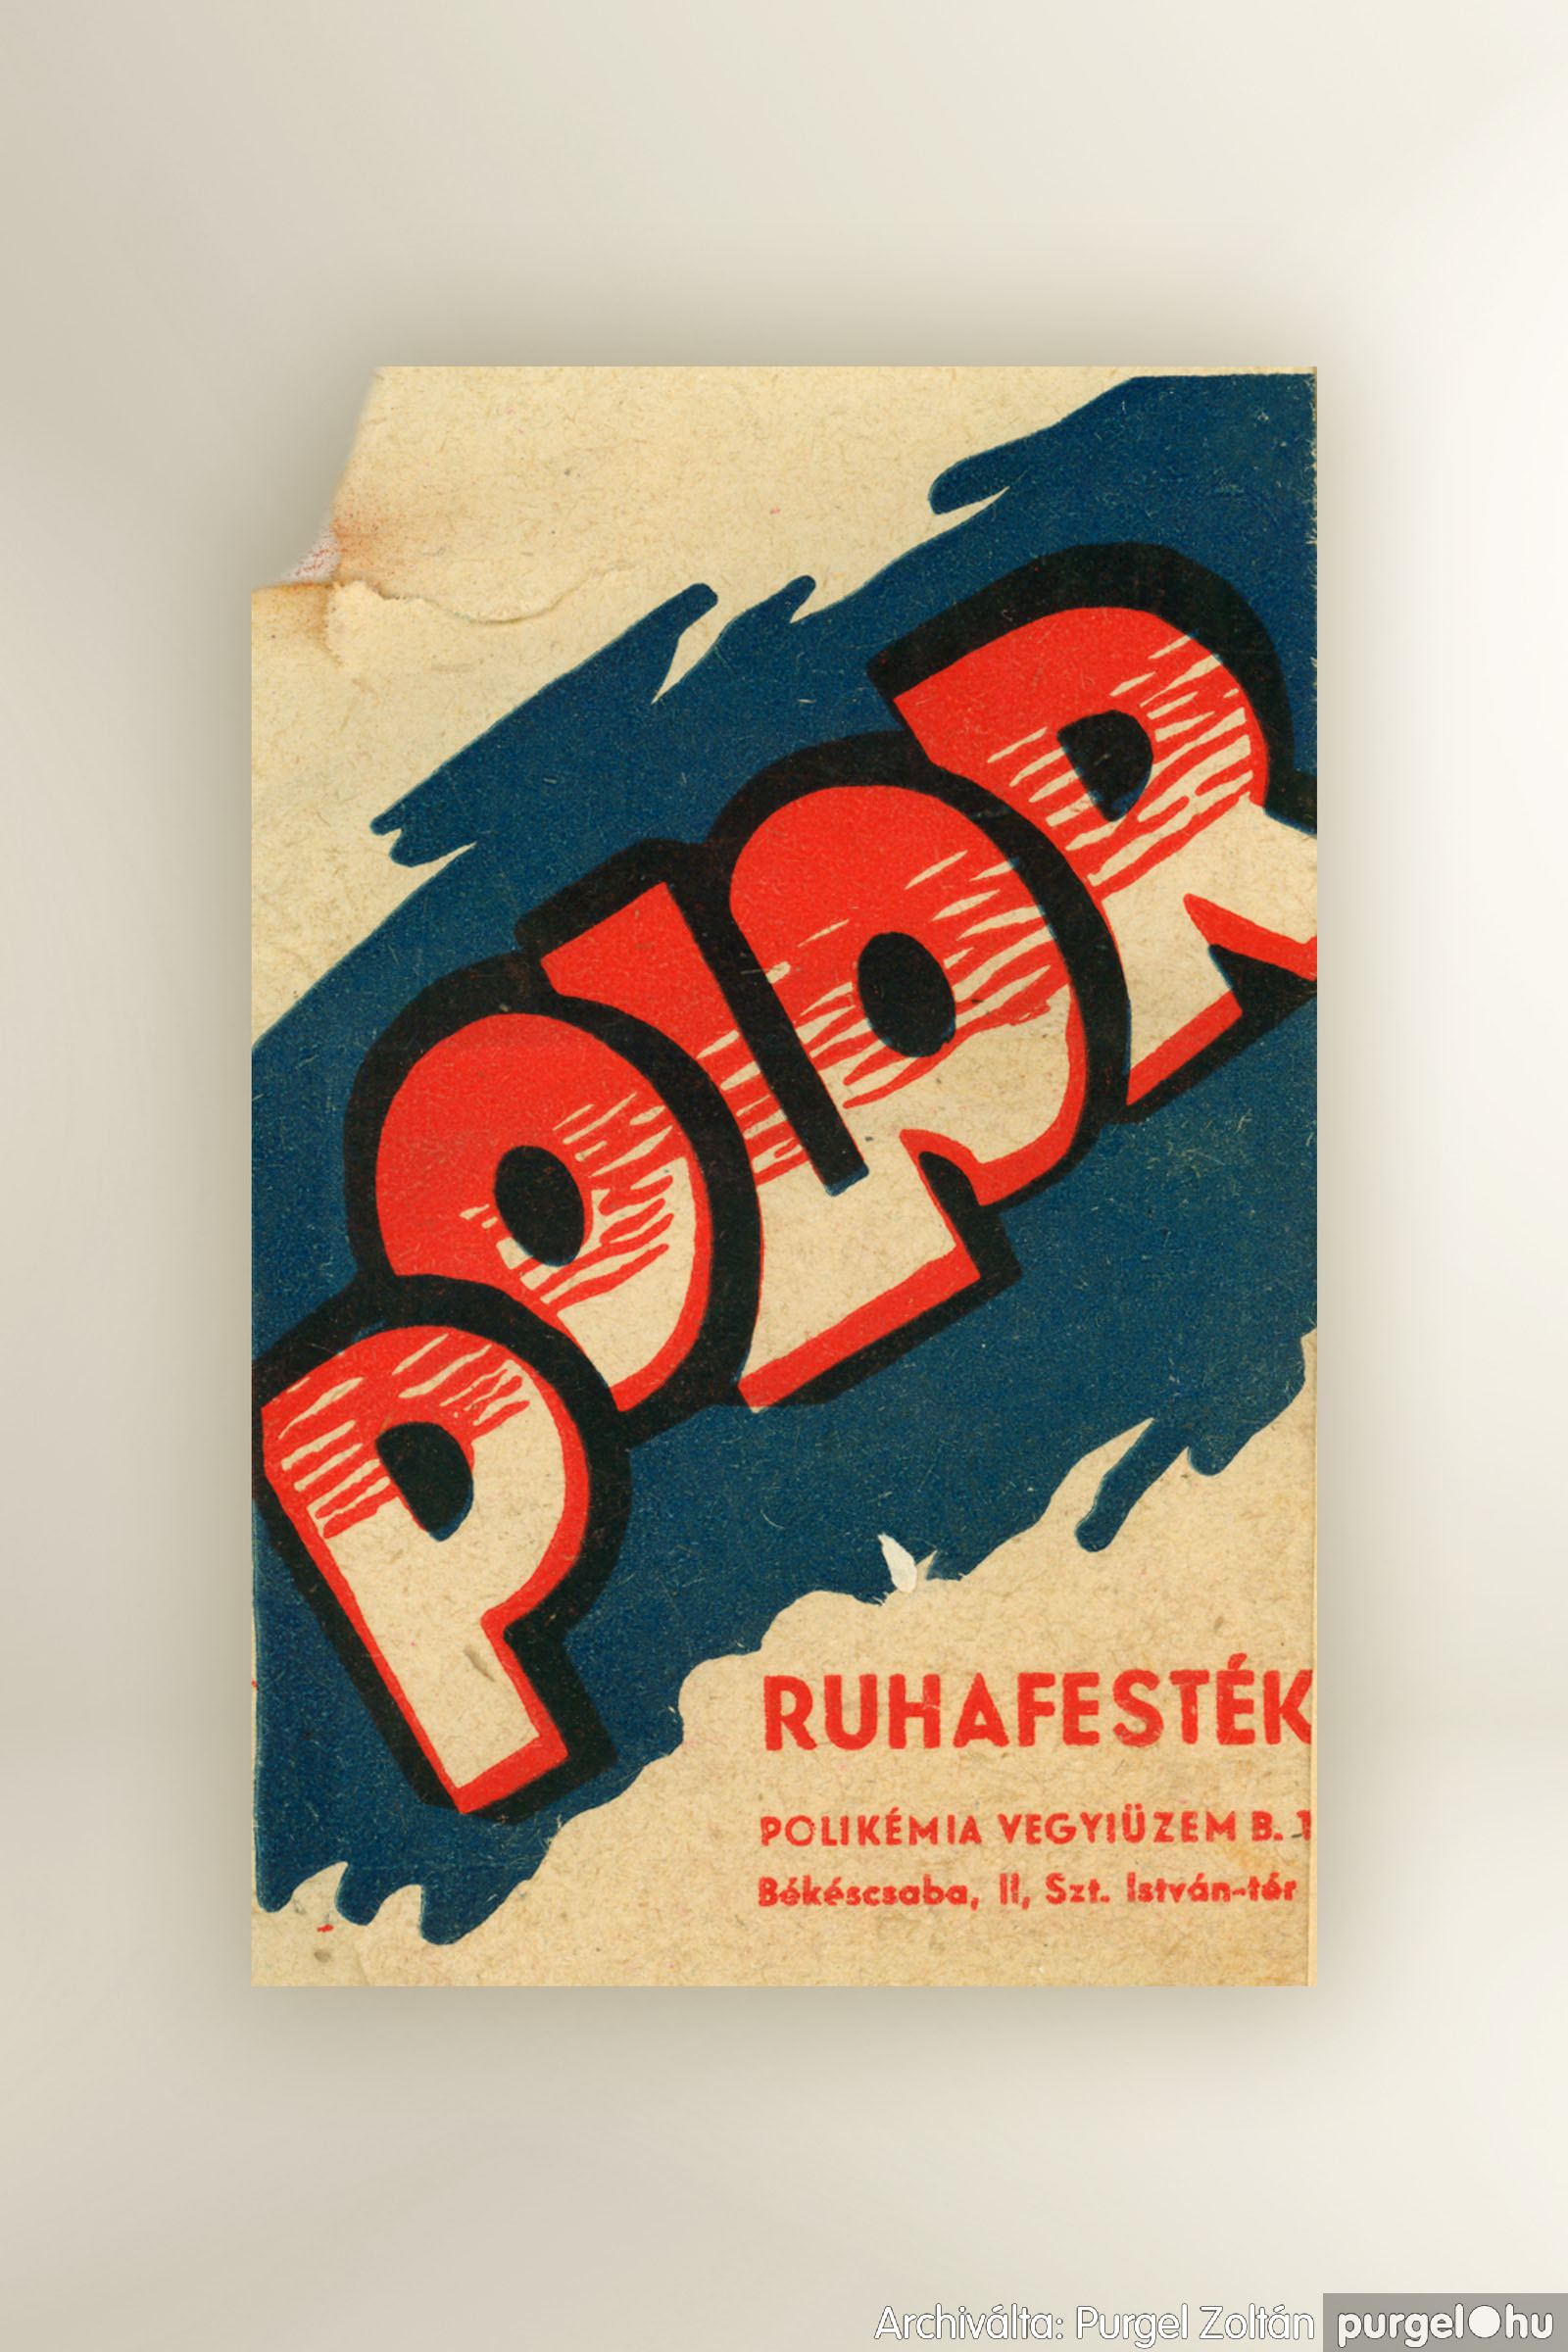 038 Polor Ruhafesték – Archiválta：PURGEL ZOLTÁN©.jpg